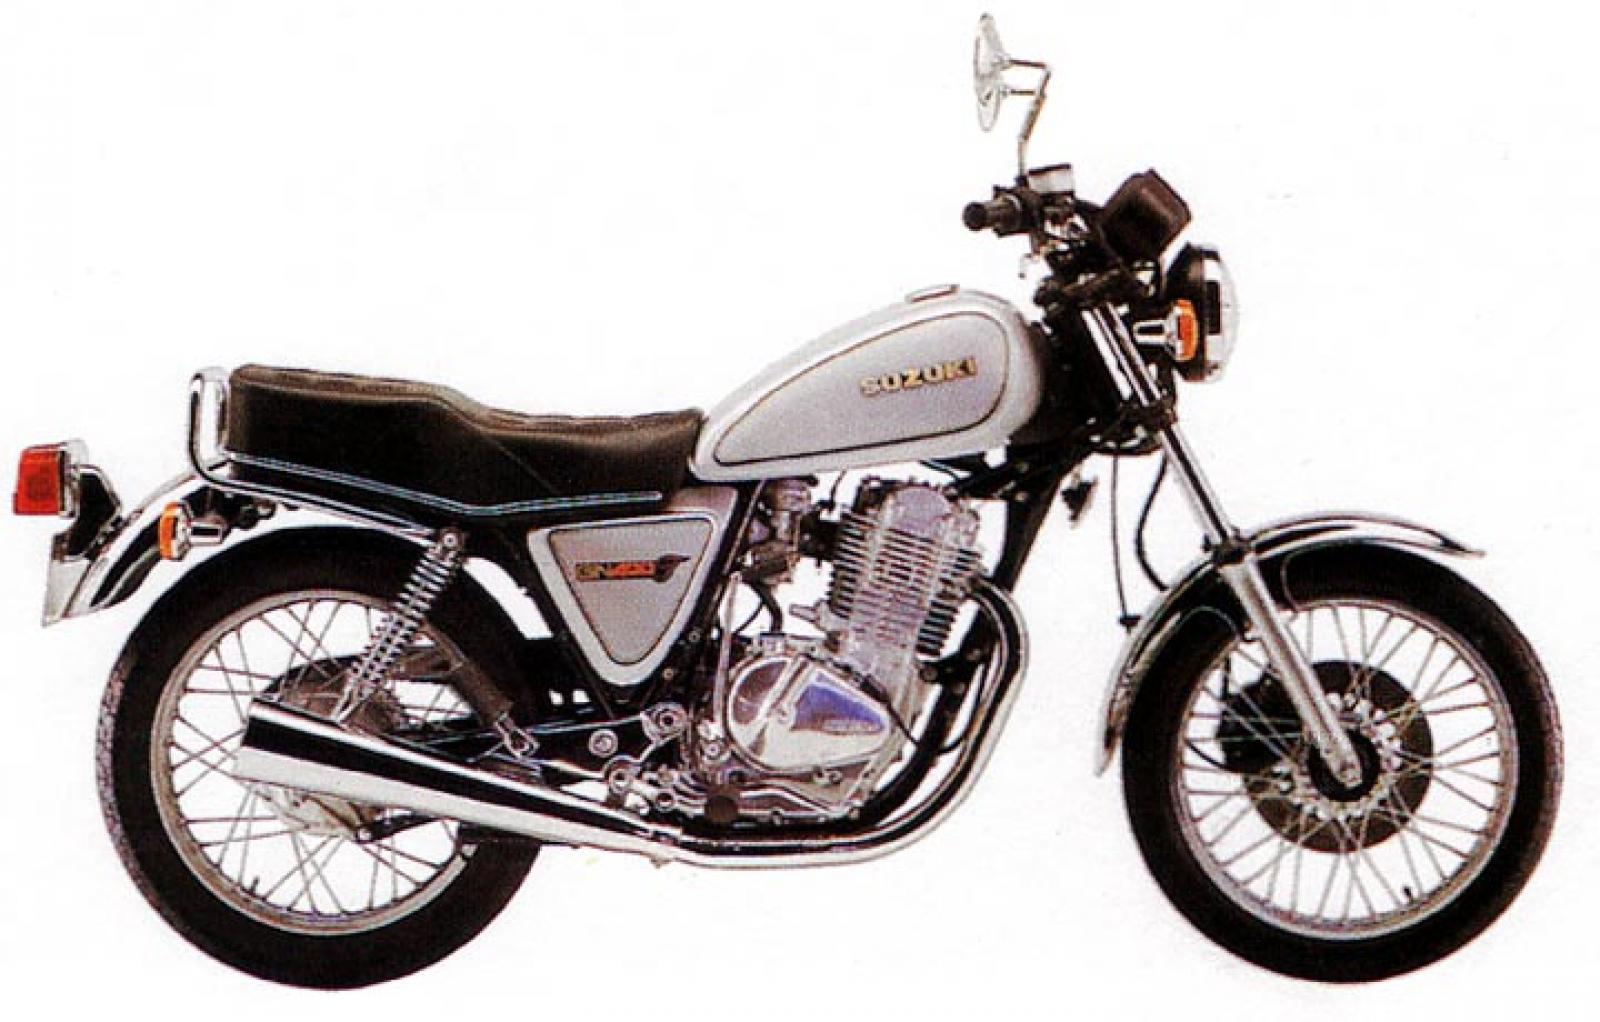 1980 Suzuki SP400